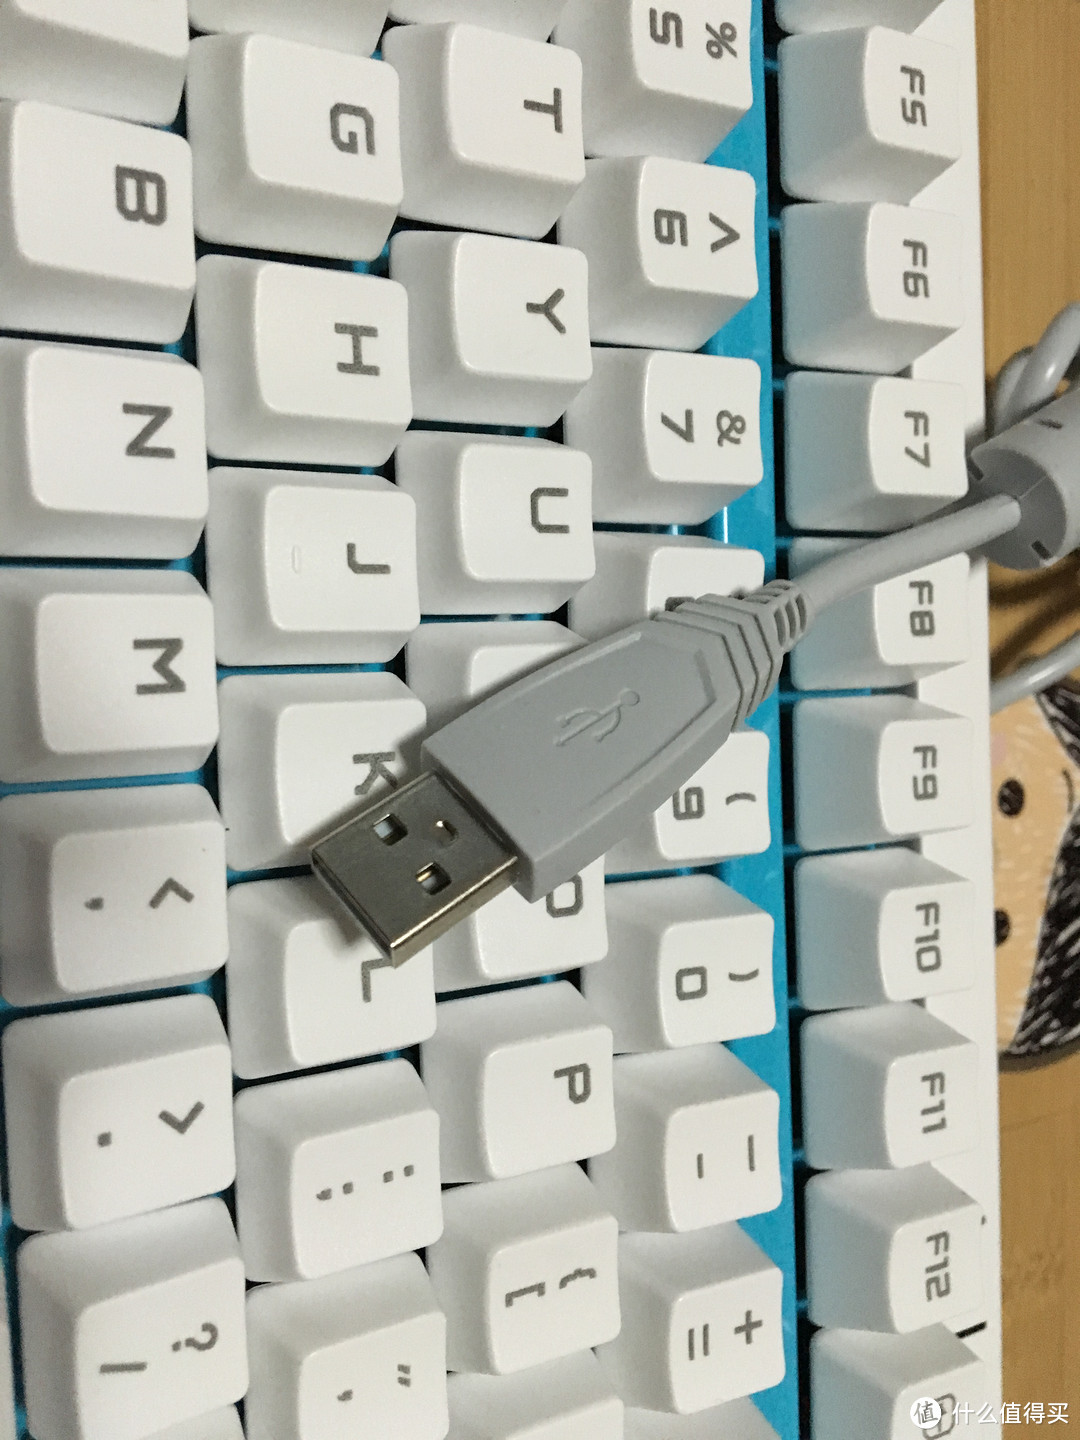 我的处女机——首款机械键盘雷柏v500开箱试用报告